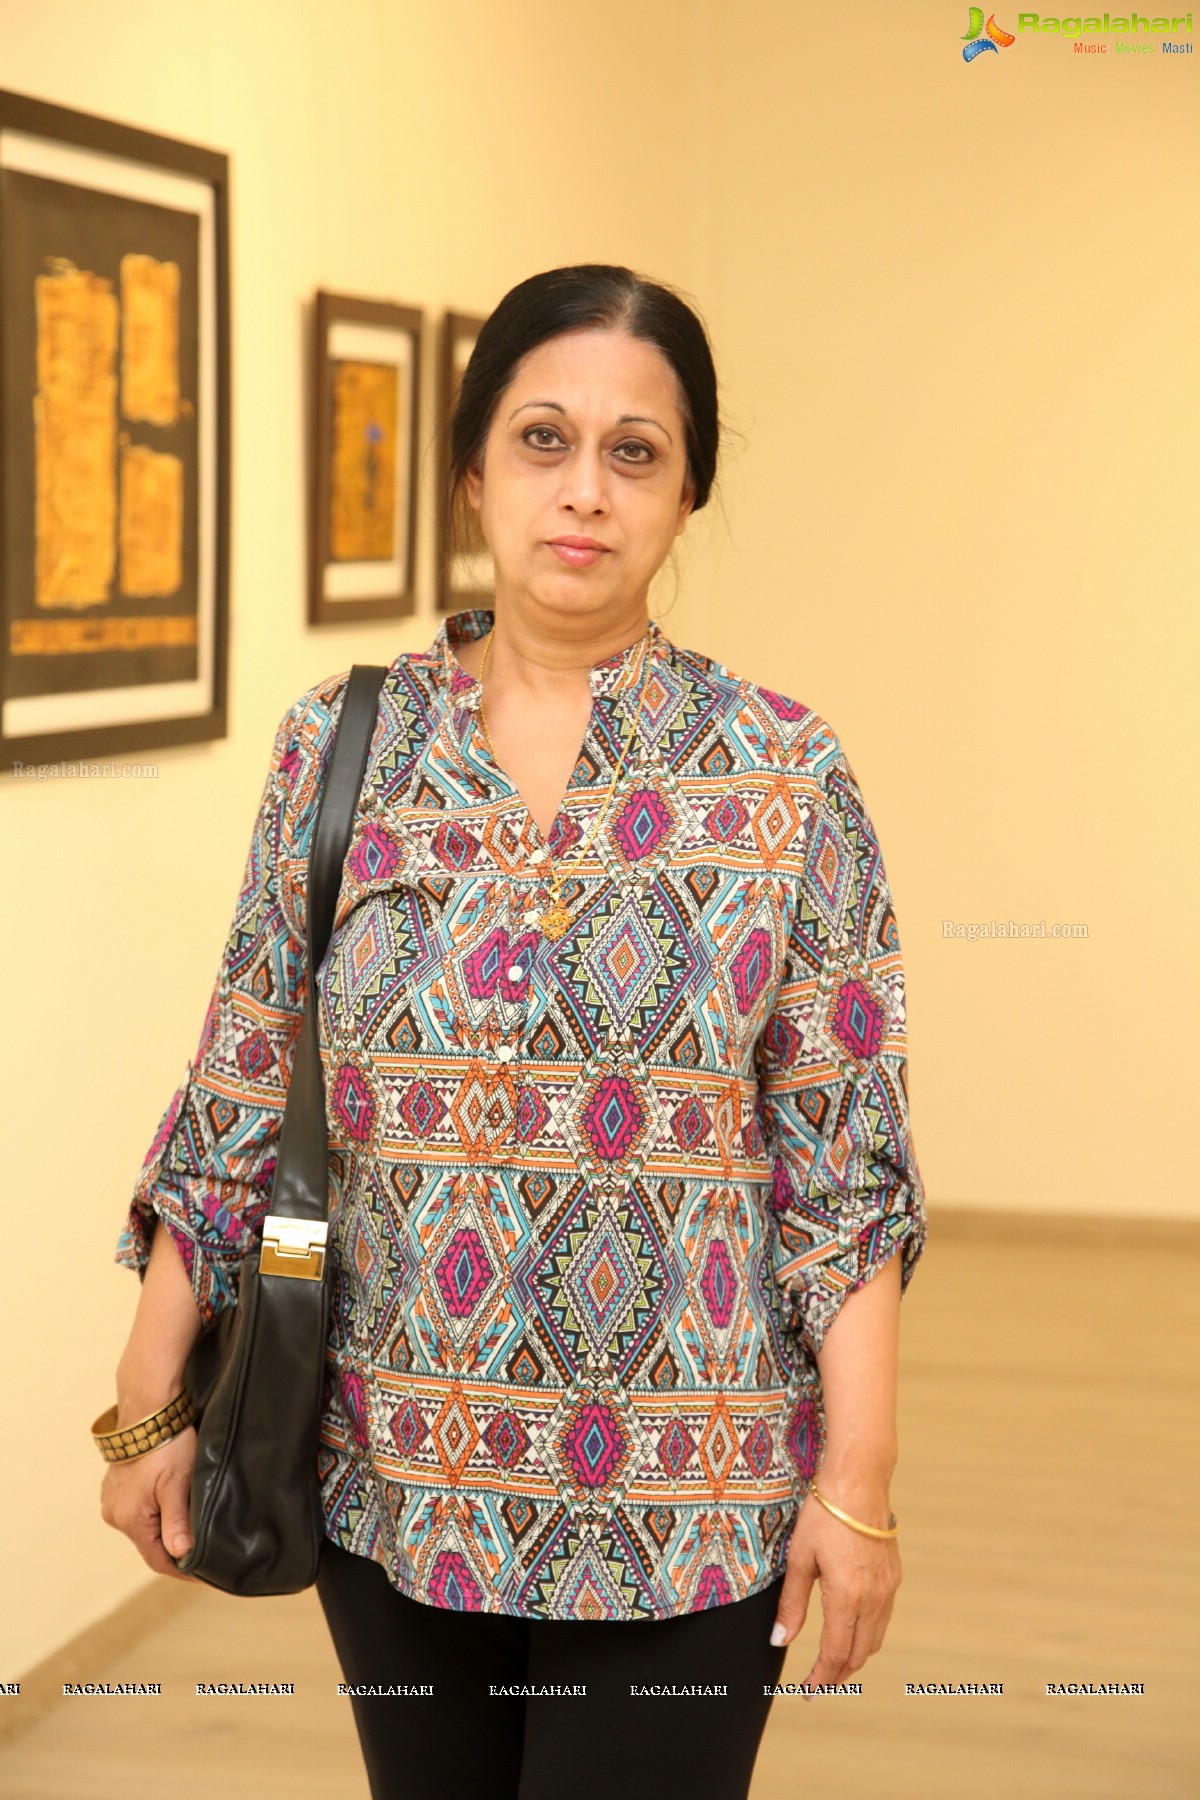 Shifting Realities by Ashok Kumar - Painting Exhibition at Kalakriti Art Gallery